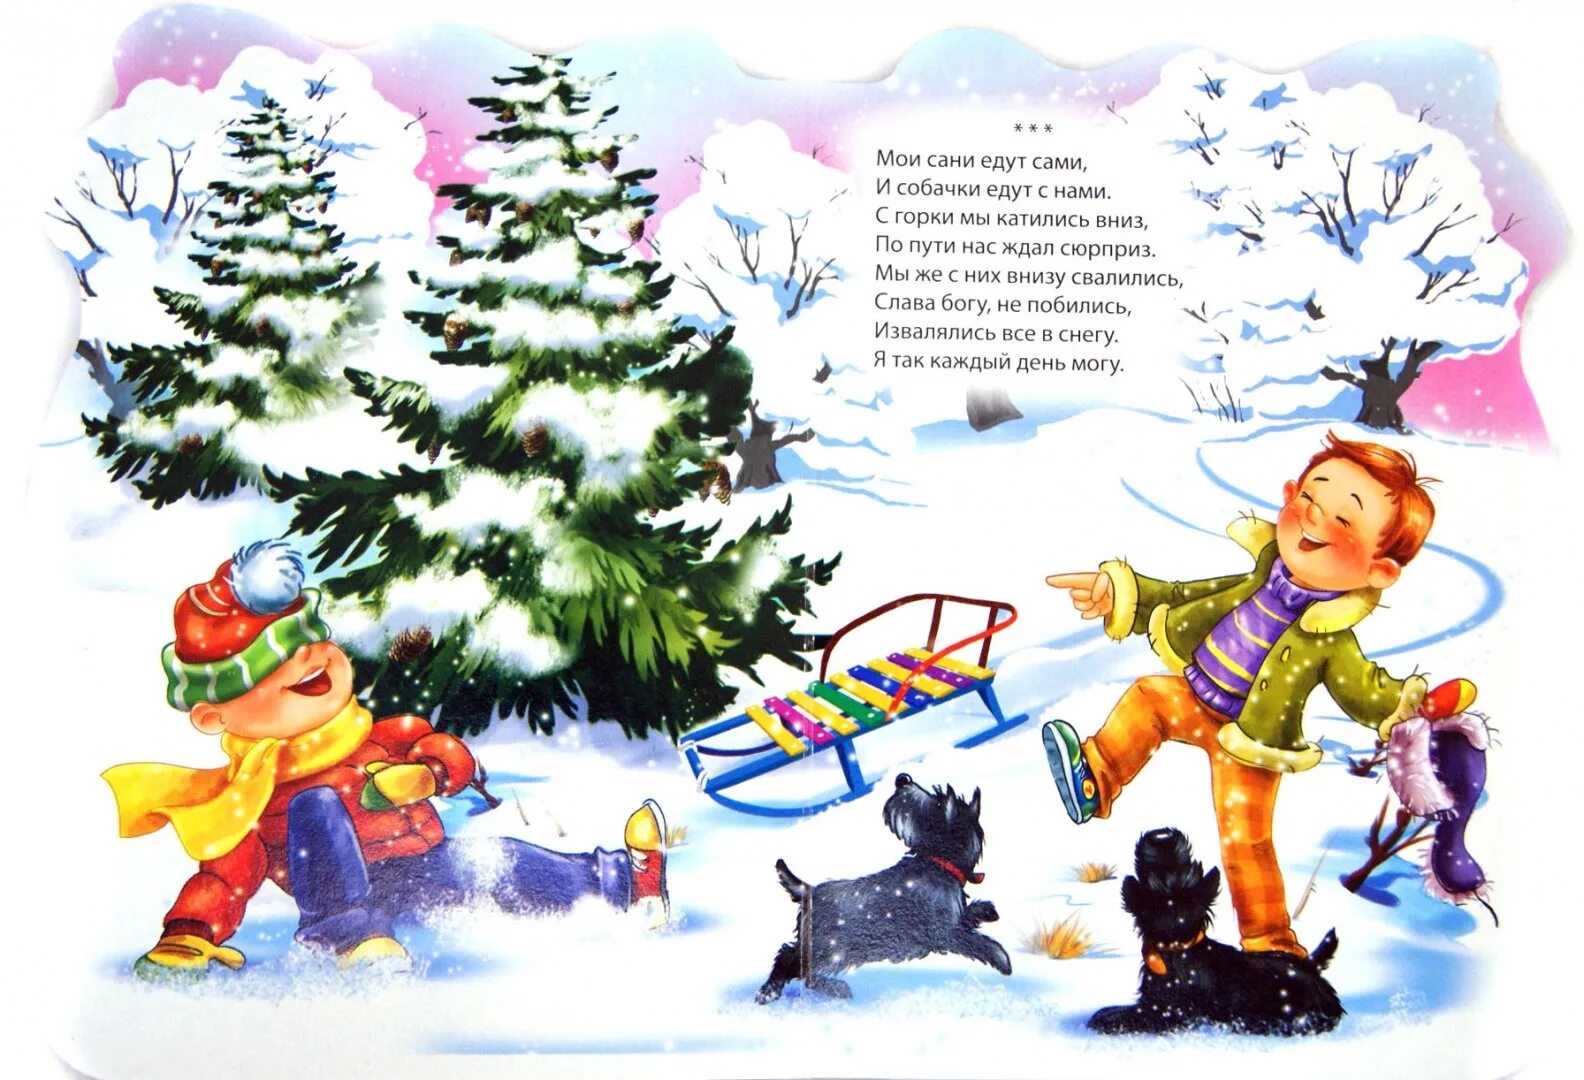 Еду под горку. Зимние стихи для детей. Детские стихи про зиму. Стихи про зимние забавы для дошкольников. Зимнее стихотворение для детей.